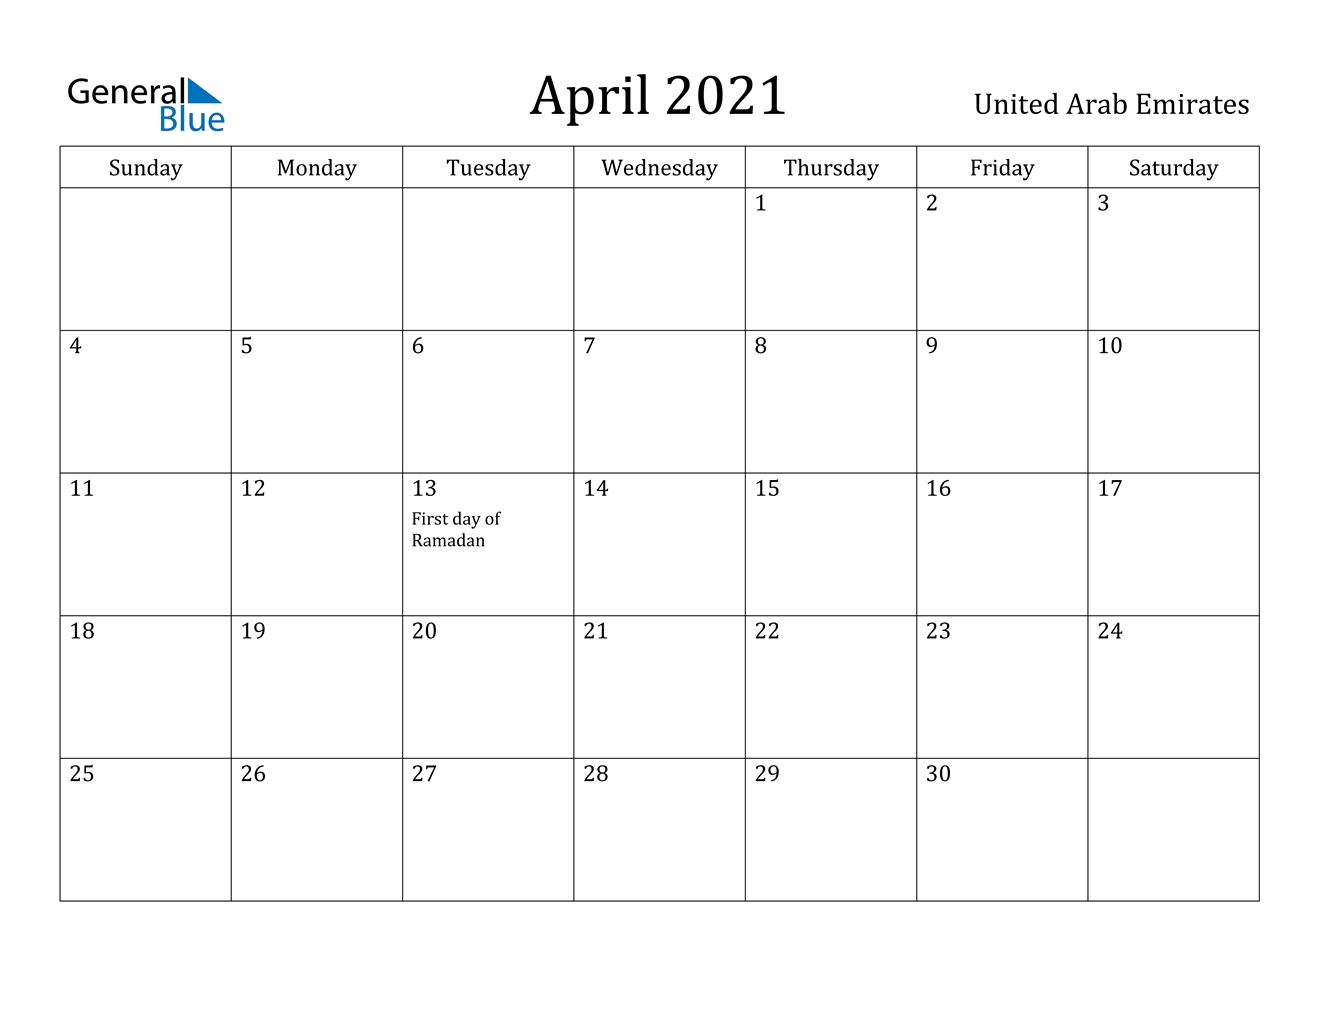 April 2021 Calendar - United Arab Emirates